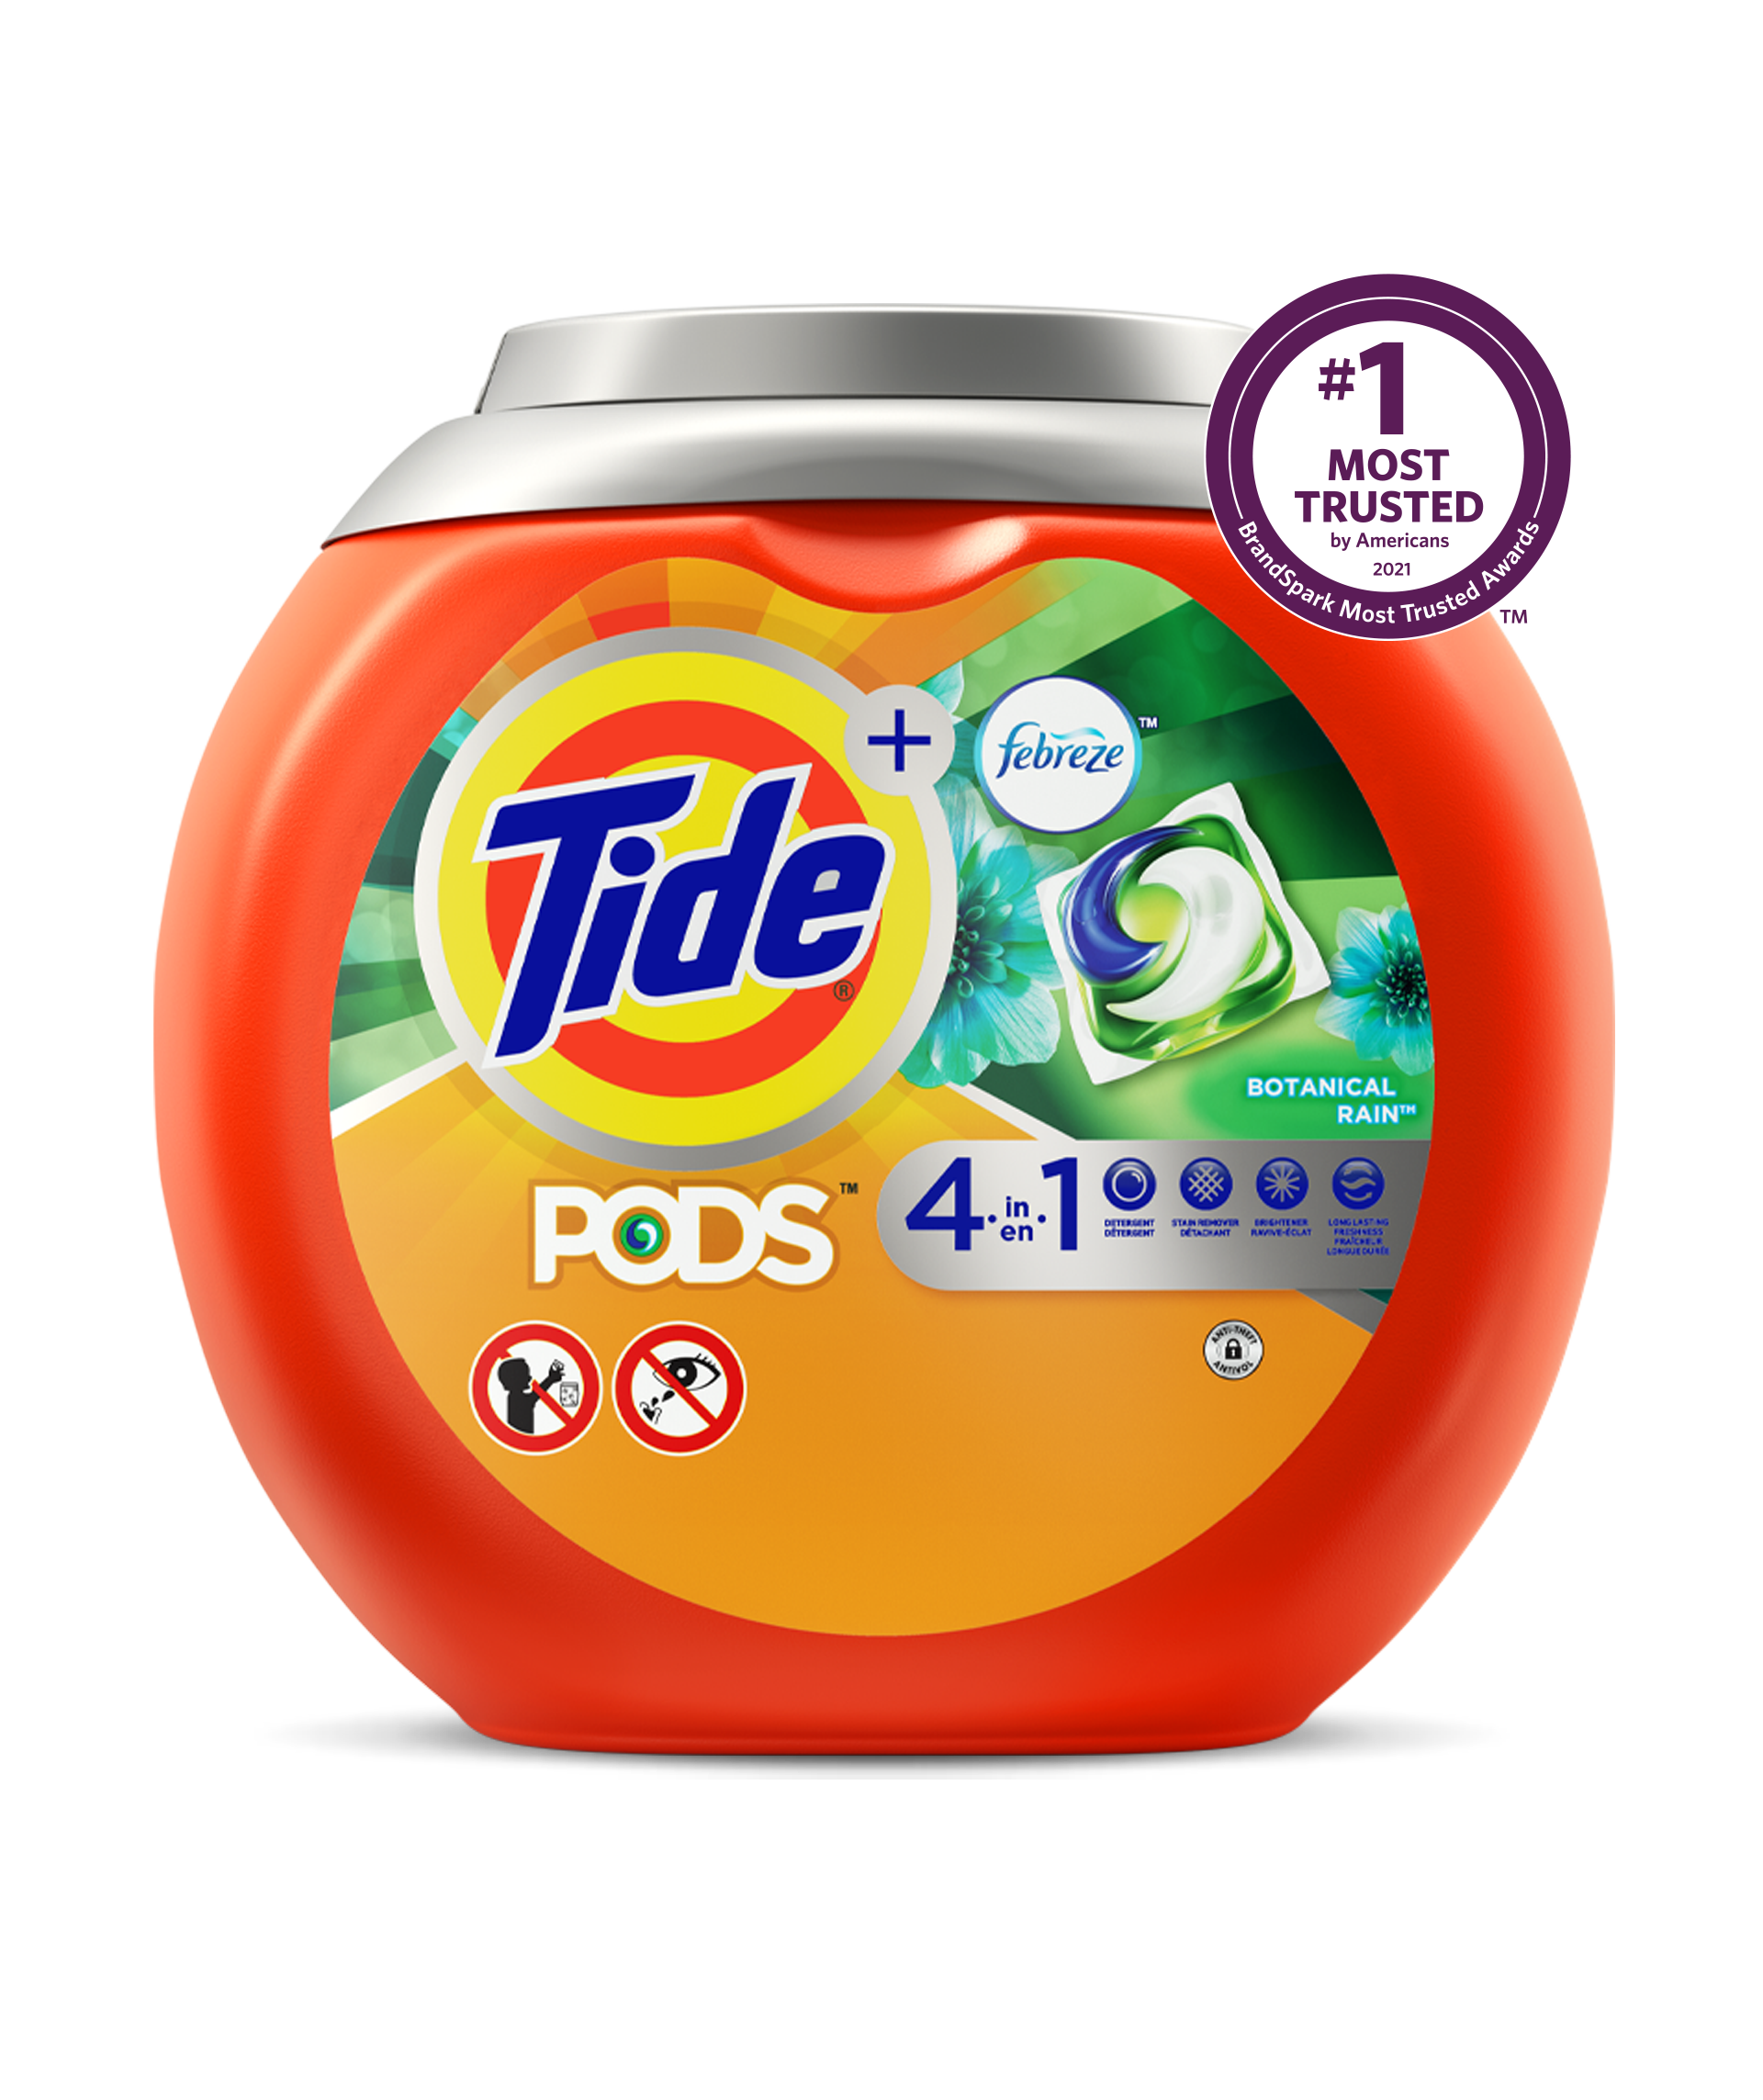 Tide PODS® Plus Febreze™ 4in1 Laundry Detergent - 23 count, color orange